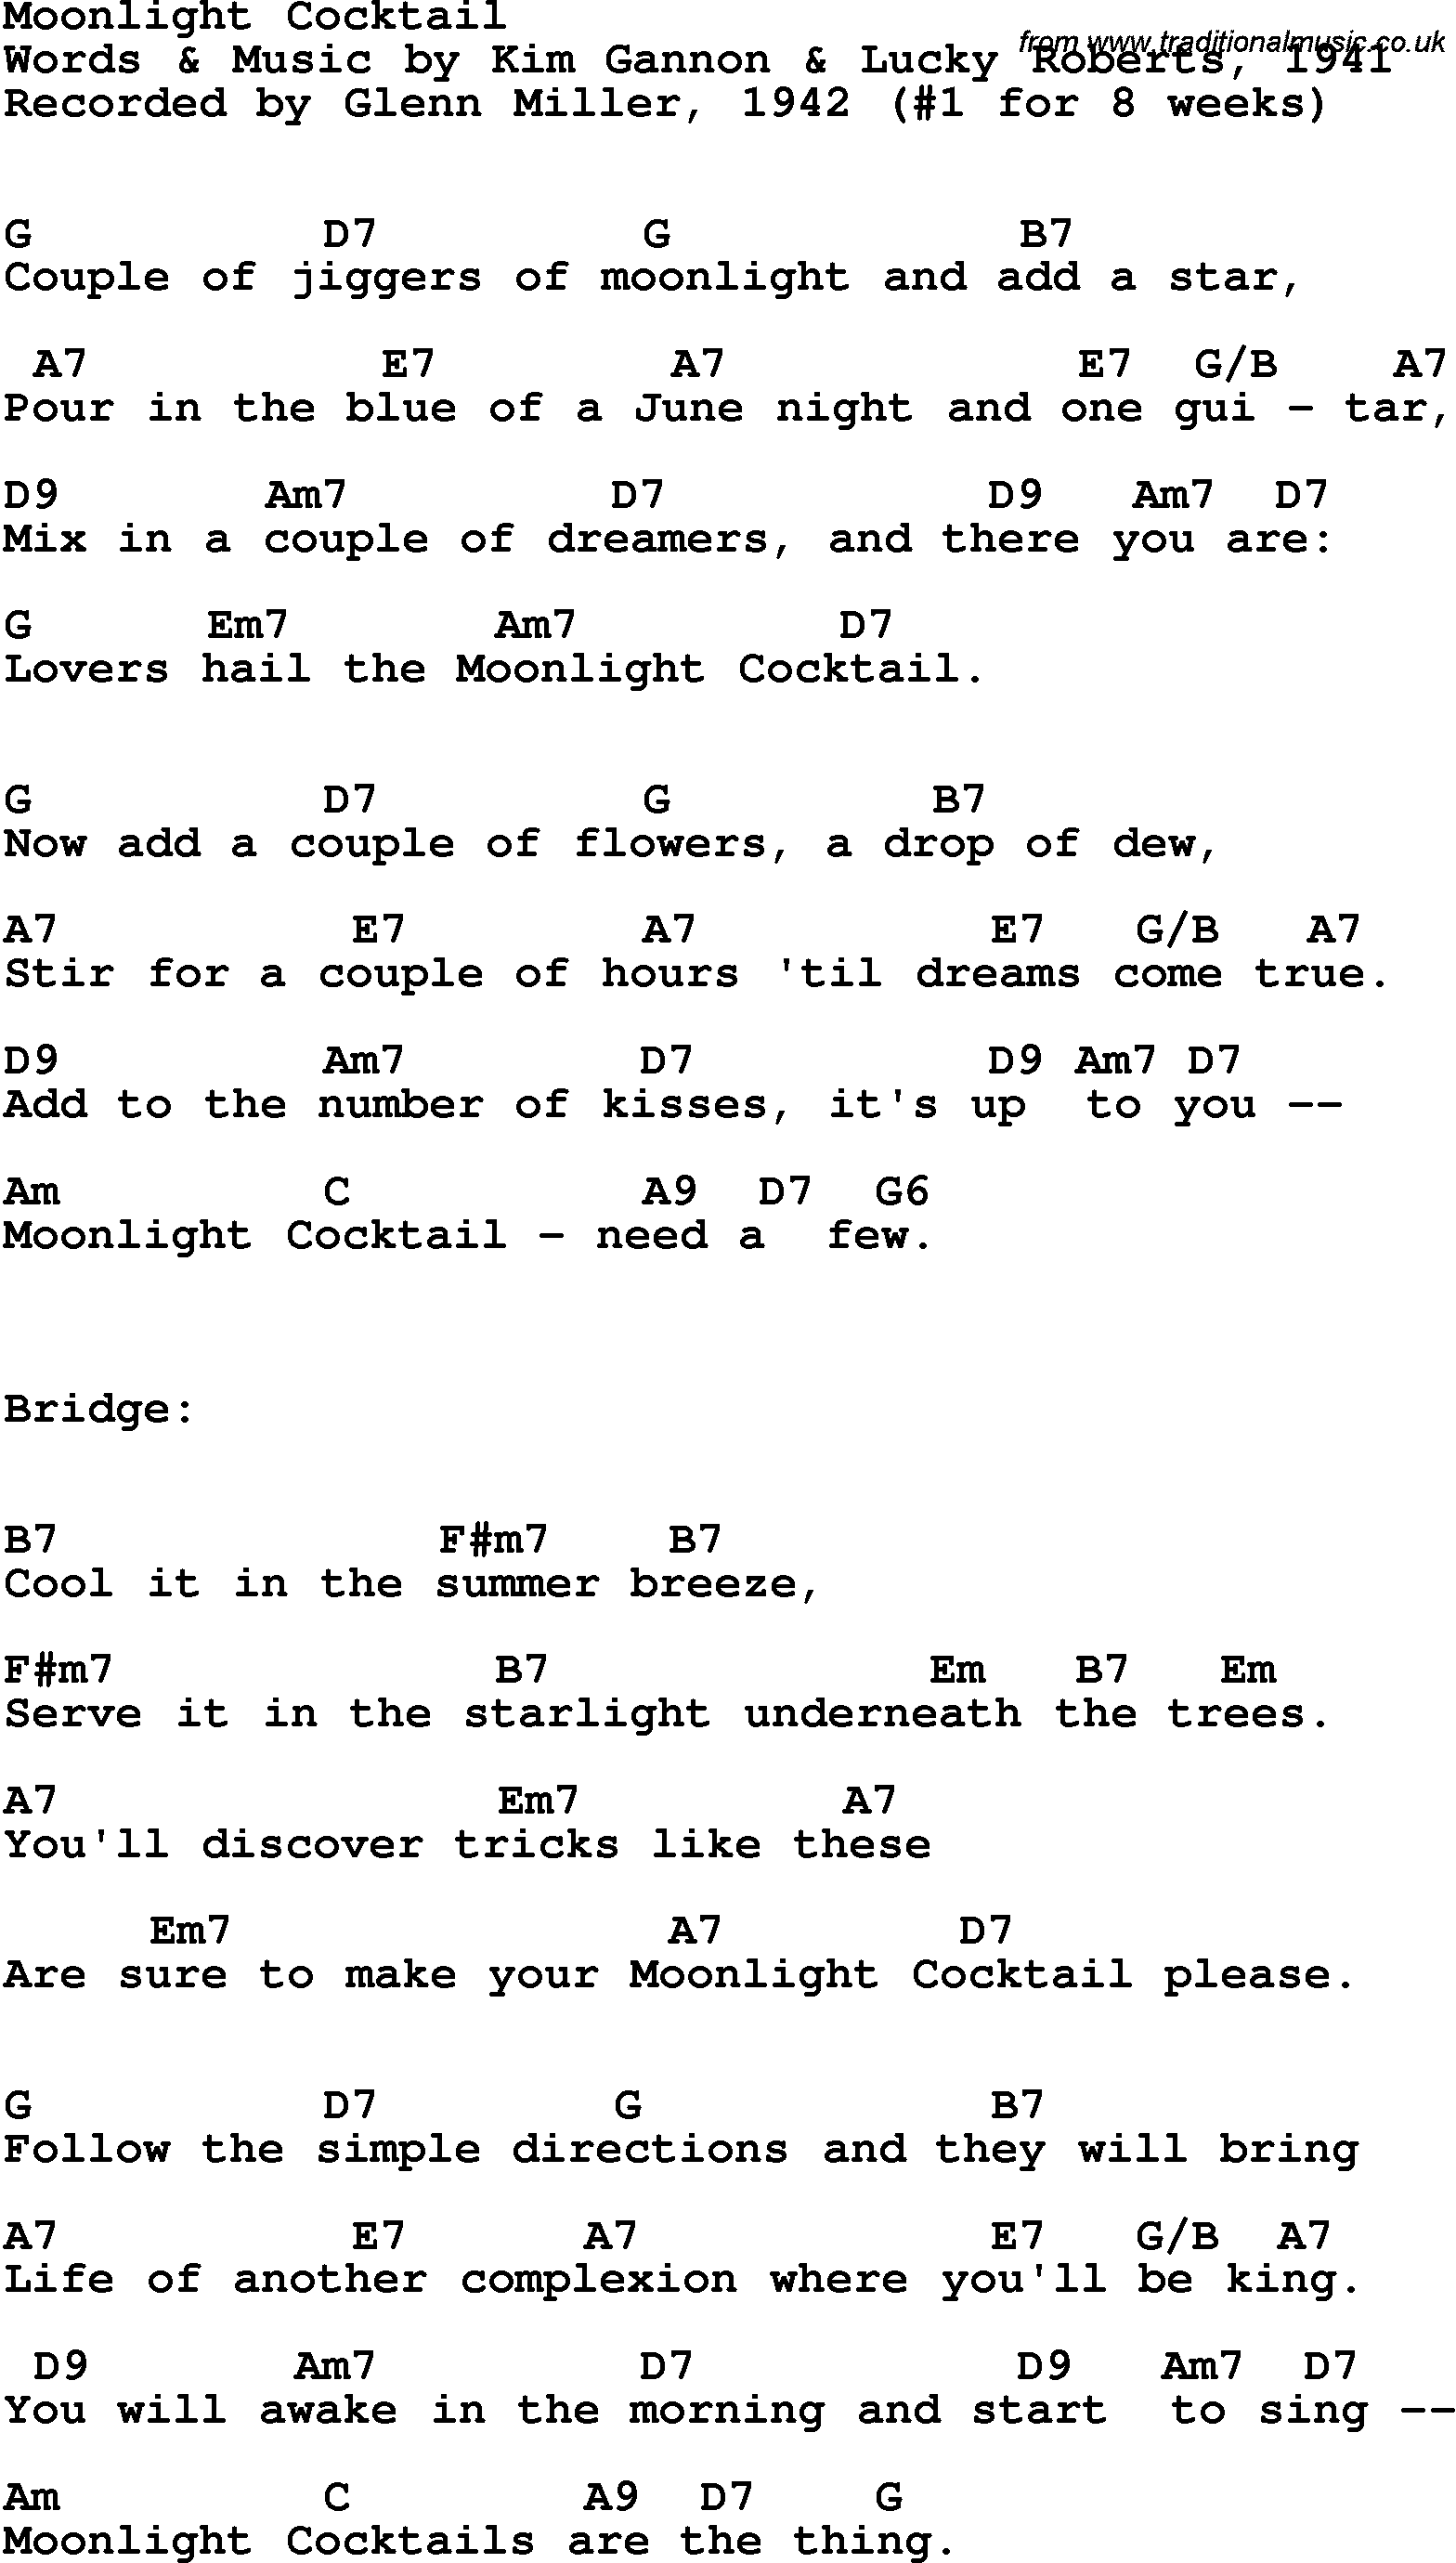 Song Lyrics with guitar chords for Moonlight Cocktail - Glenn Miller, 1942